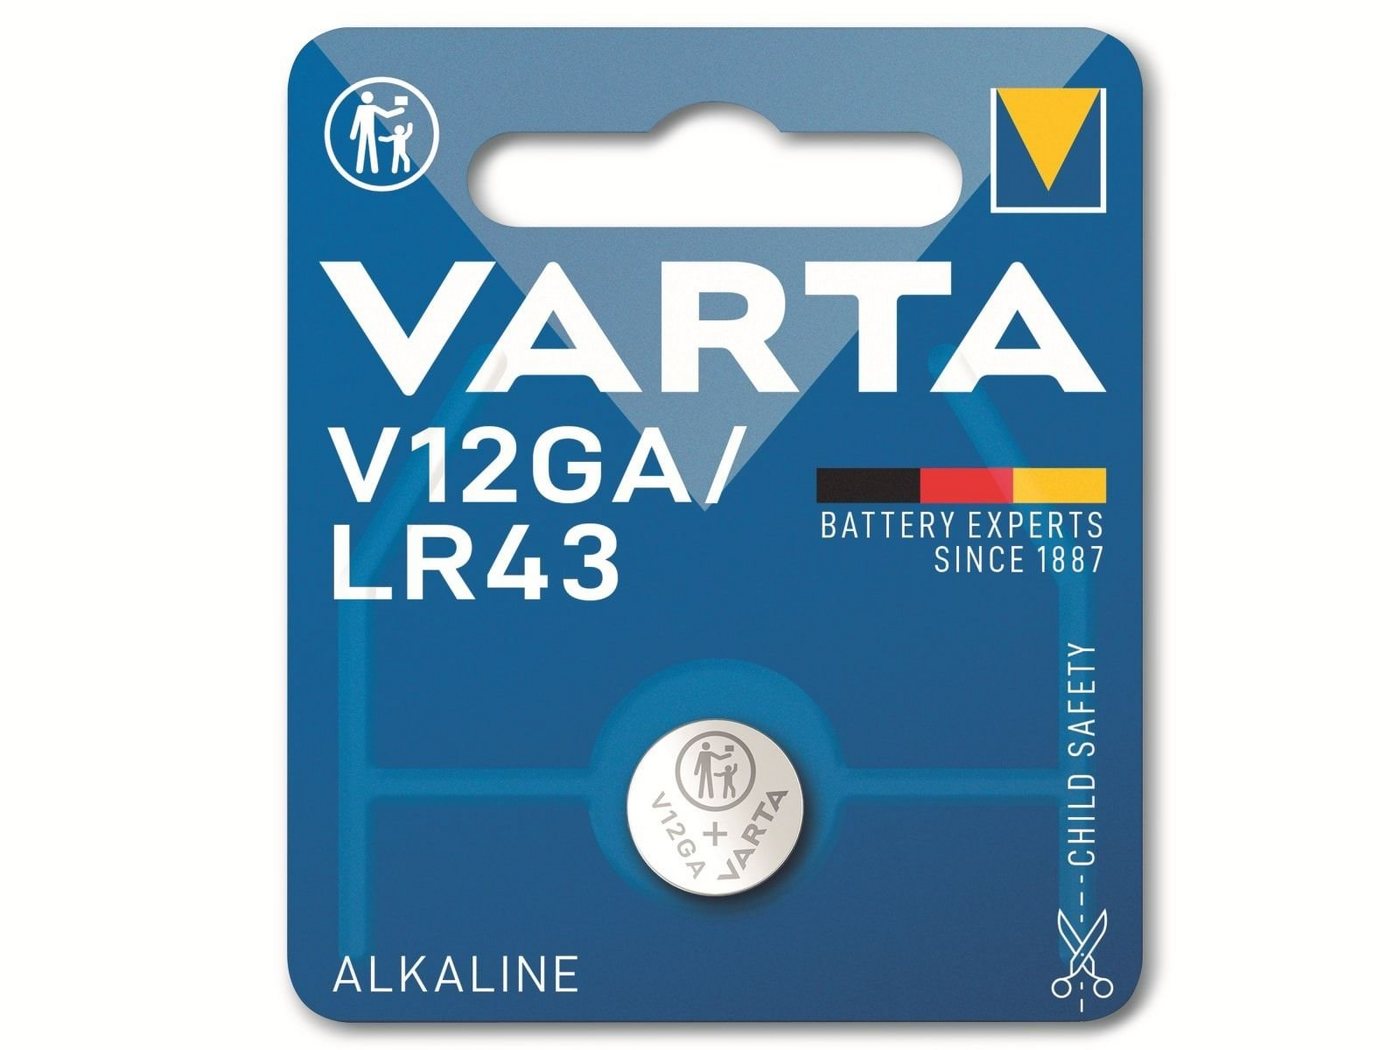 VARTA VARTA Knopfzelle Alkaline, LR43, 1.5V V12GA, Knopfzelle von VARTA